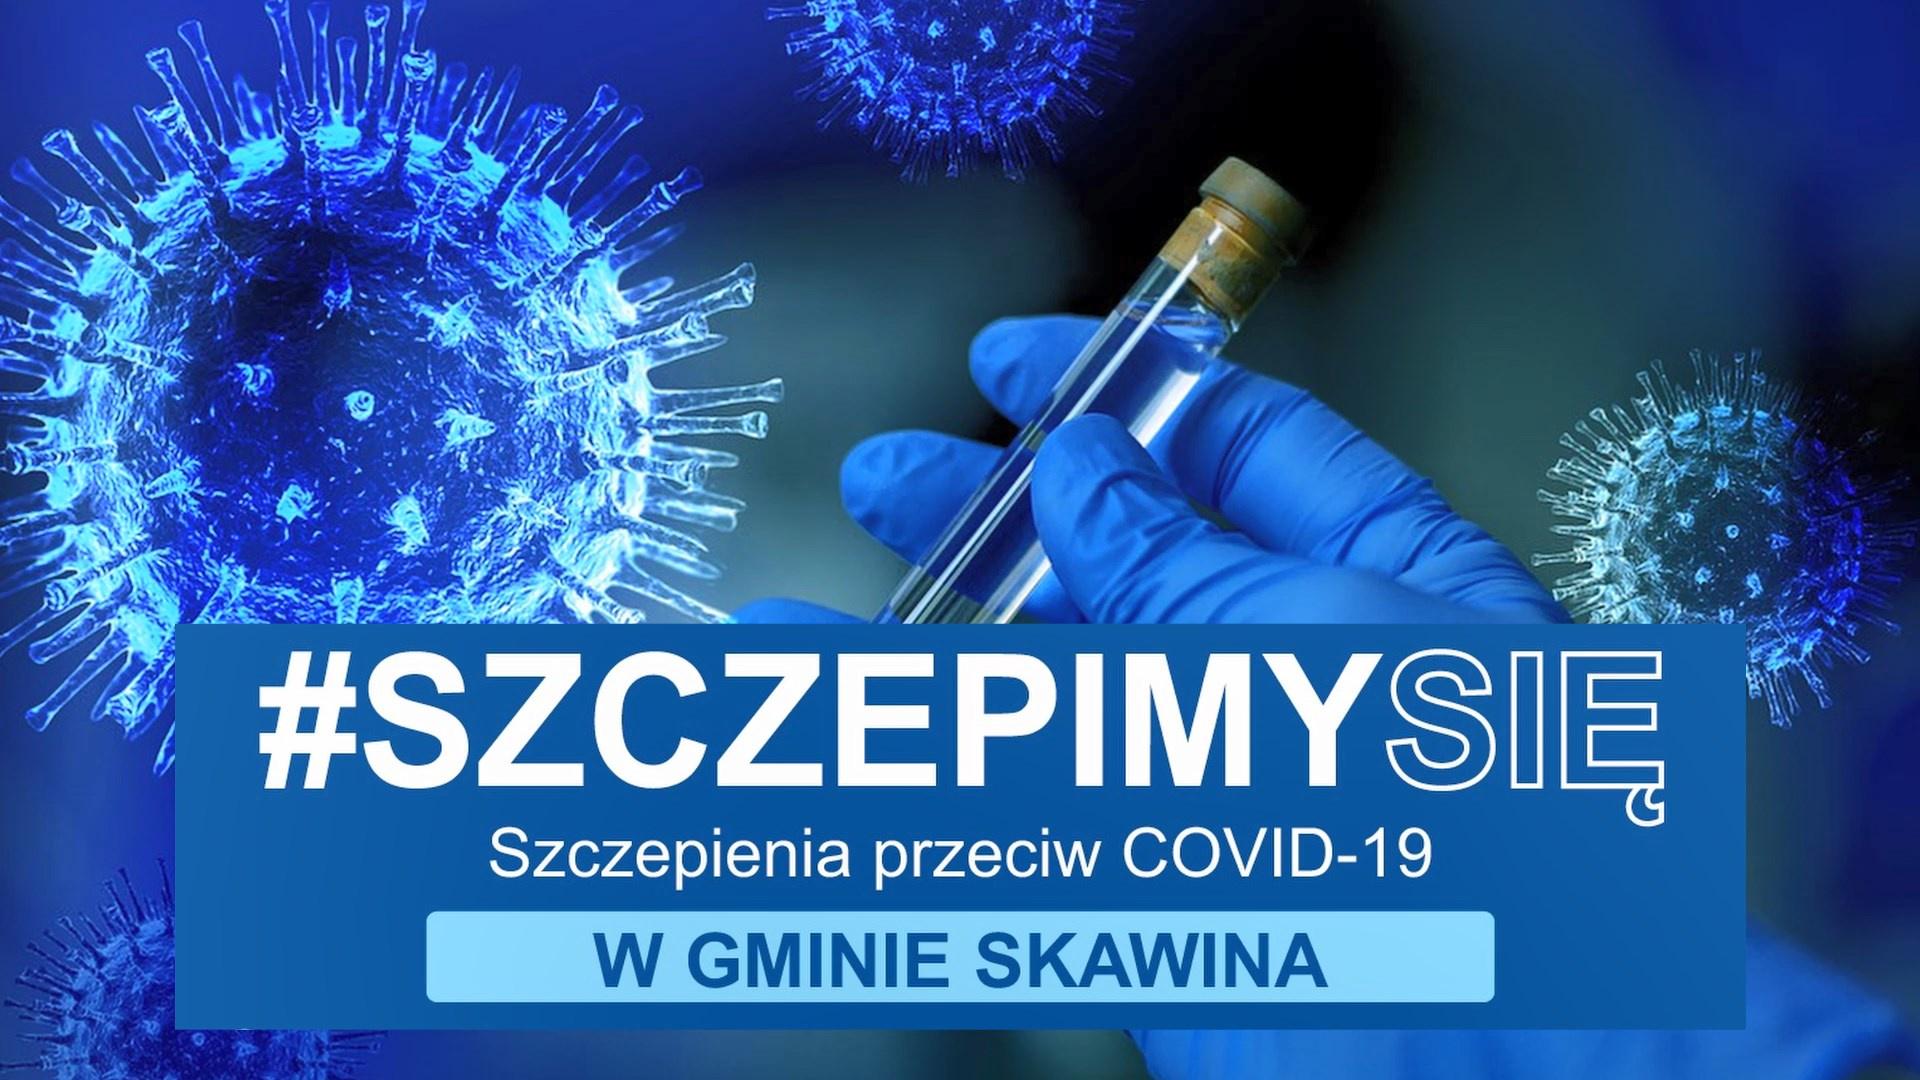 Szczepimy się. Szczepienia przeciw COVID-19 w gminie Skawina.